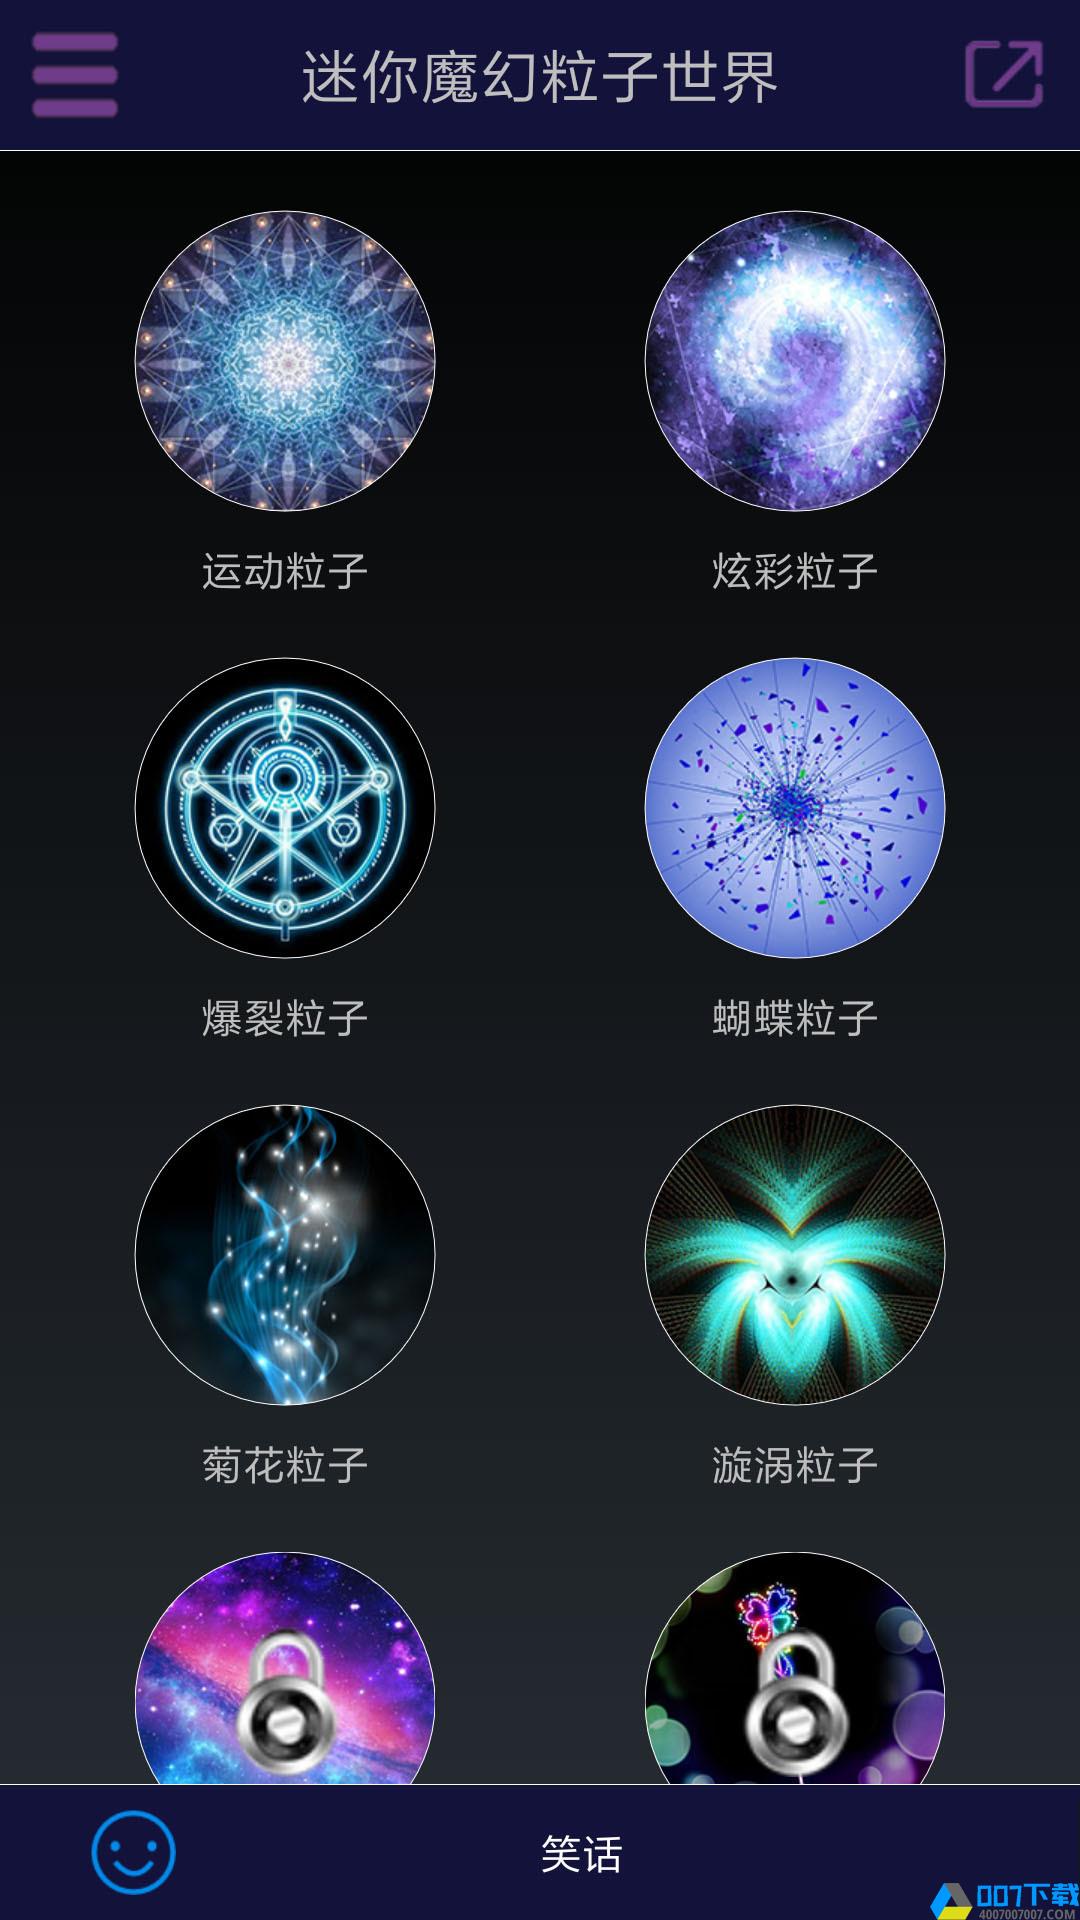 迷你魔幻粒子世界下载最新版_迷你魔幻粒子世界app免费下载安装